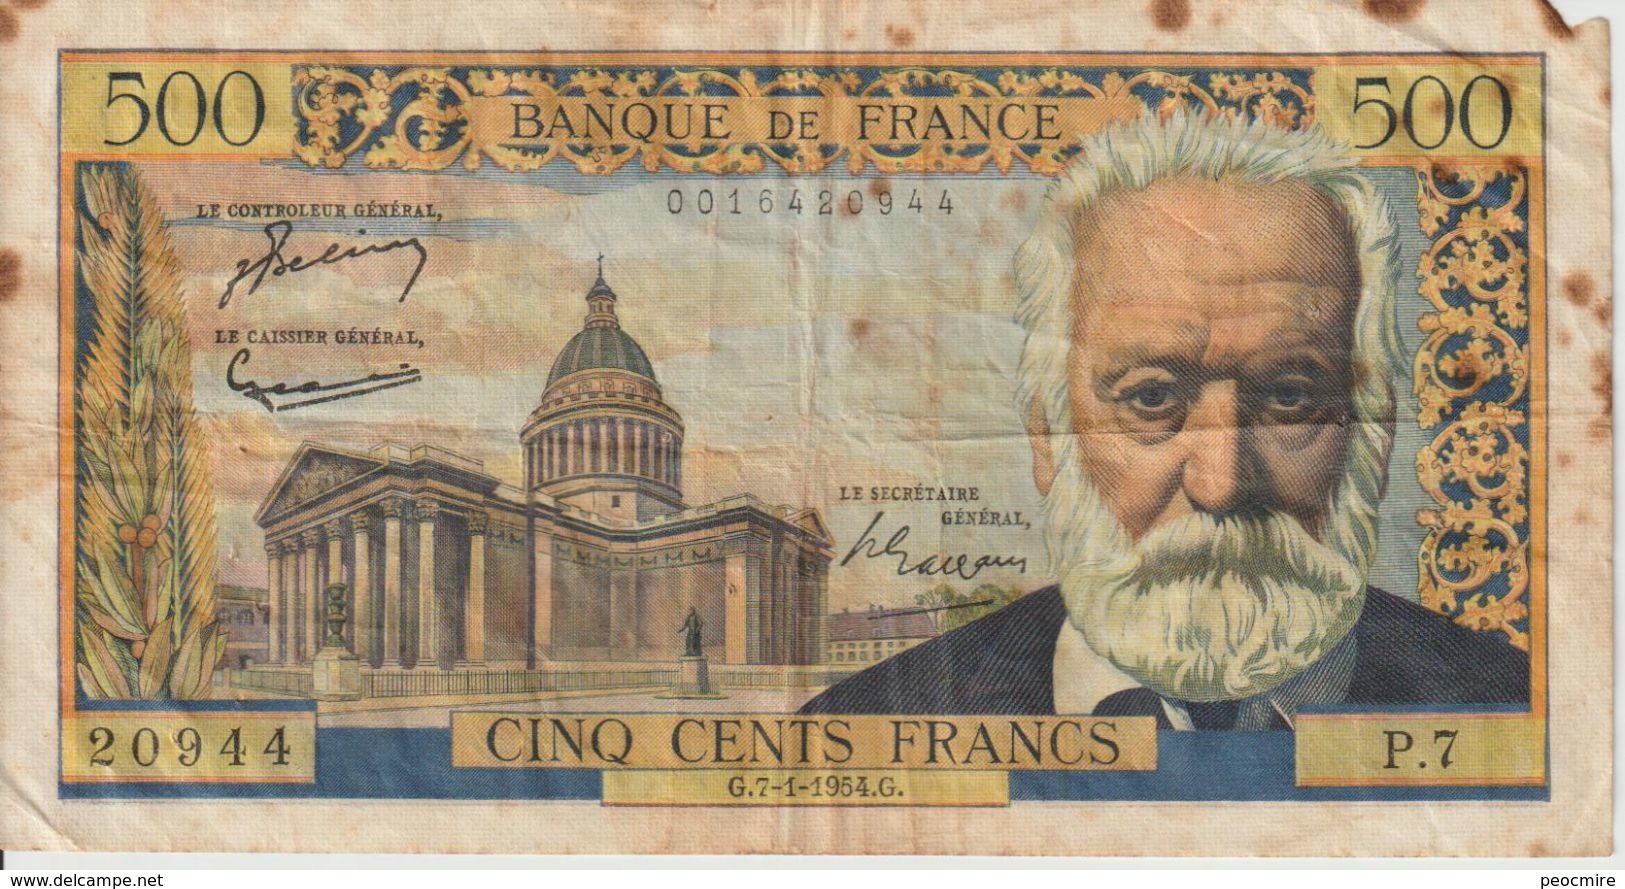 Billet  De  500 Francs  VICTOR  HOGO  -  G.7-1-1954.G  -  N°  20944  -  P.7 - 1955-1959 Surchargés En Nouveaux Francs